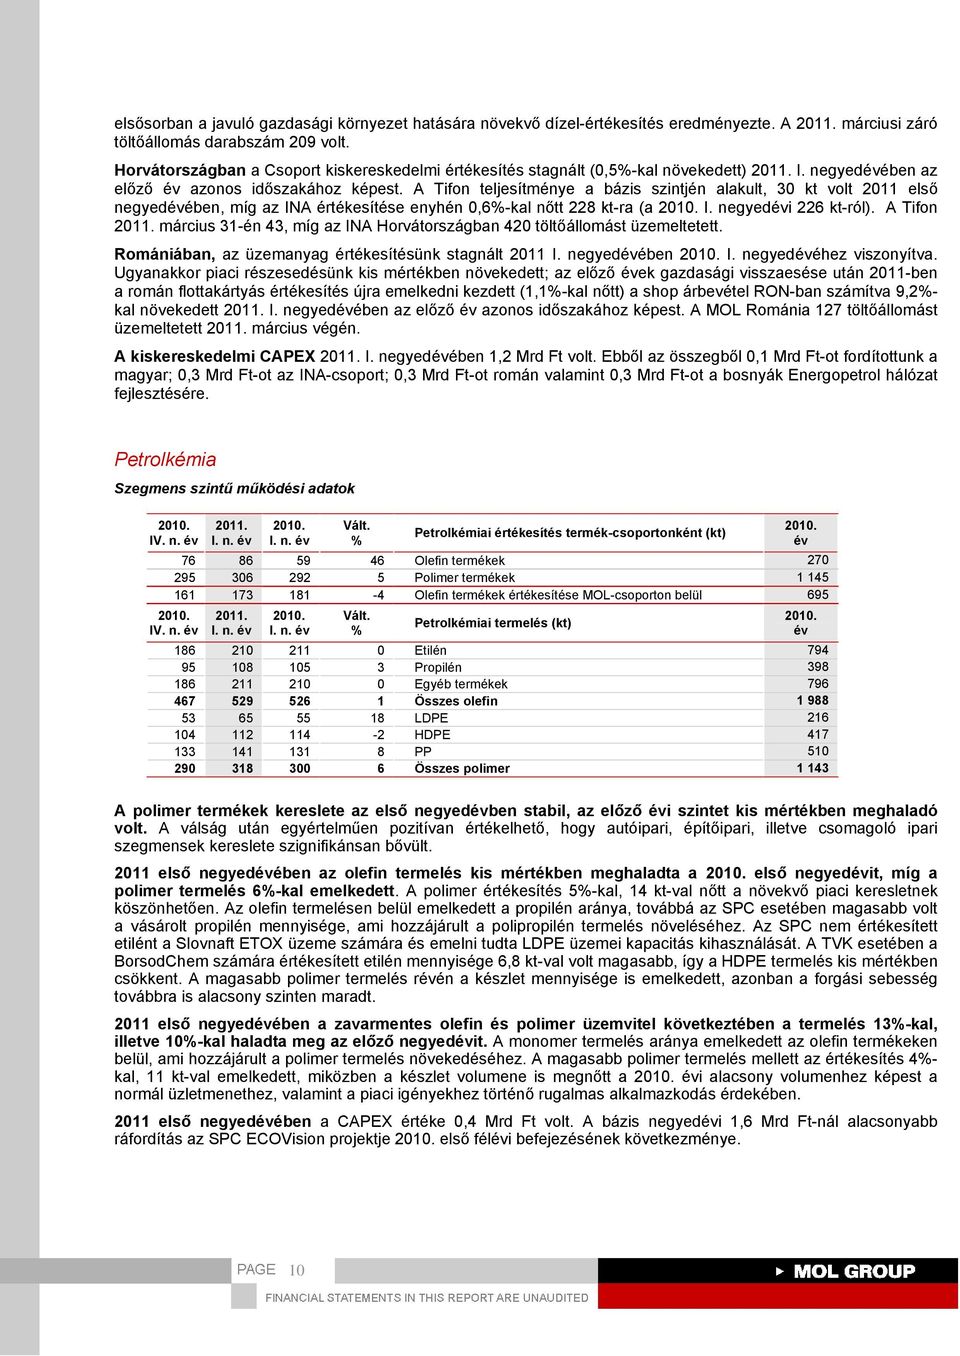 A Tifon teljesítménye a bázis szintjén alakult, 30 kt volt 2011 első negyedében, míg az INA értékesítése enyhén 0,6-kal nőtt 228 kt-ra (a I. negyedi 226 kt-ról).